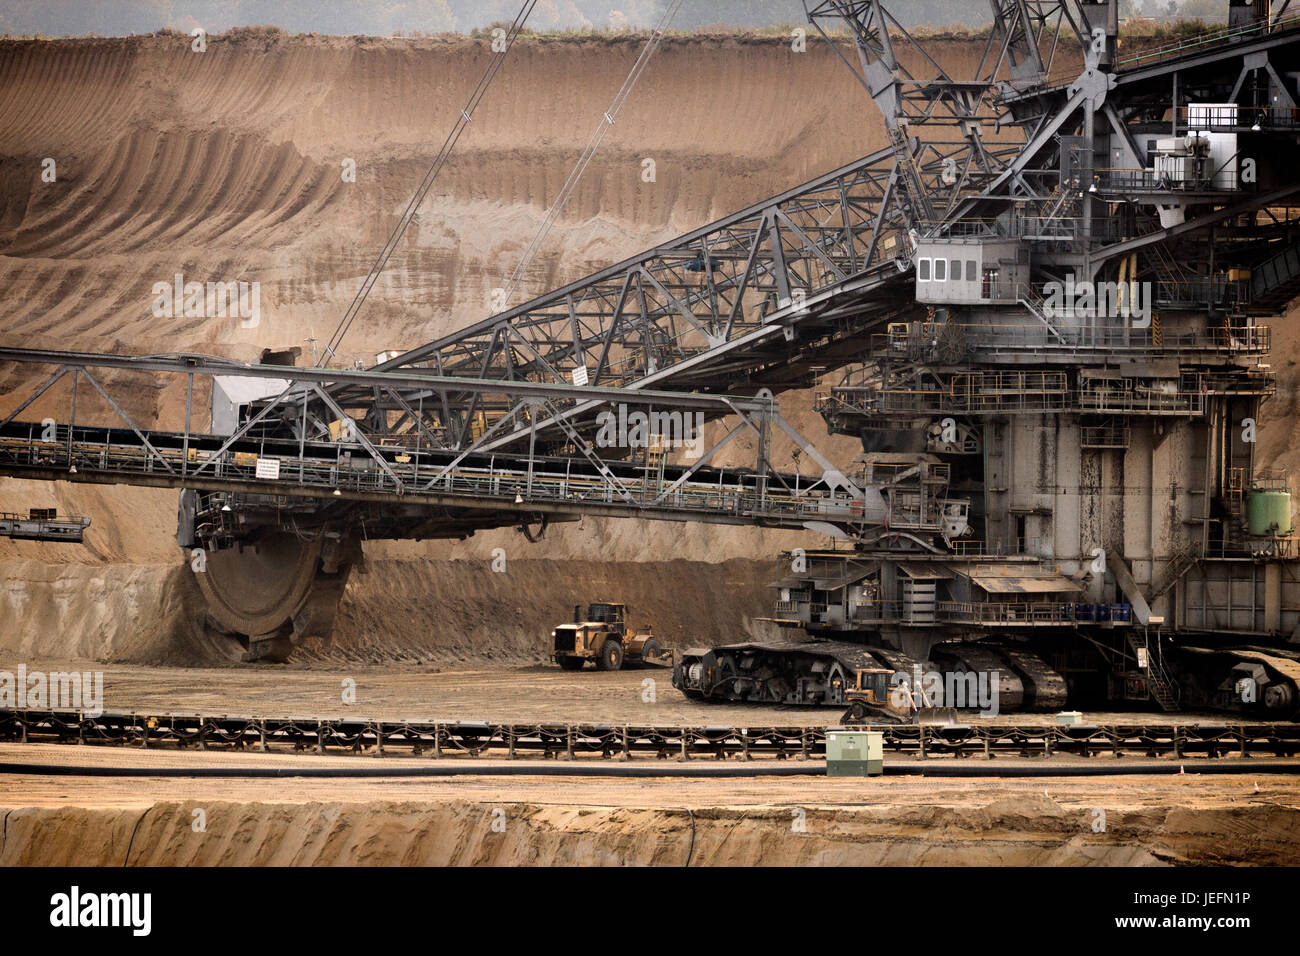 Enorme benna-escavatore a ruote in un carbone marrone fossa aperta industria mineraria Foto Stock